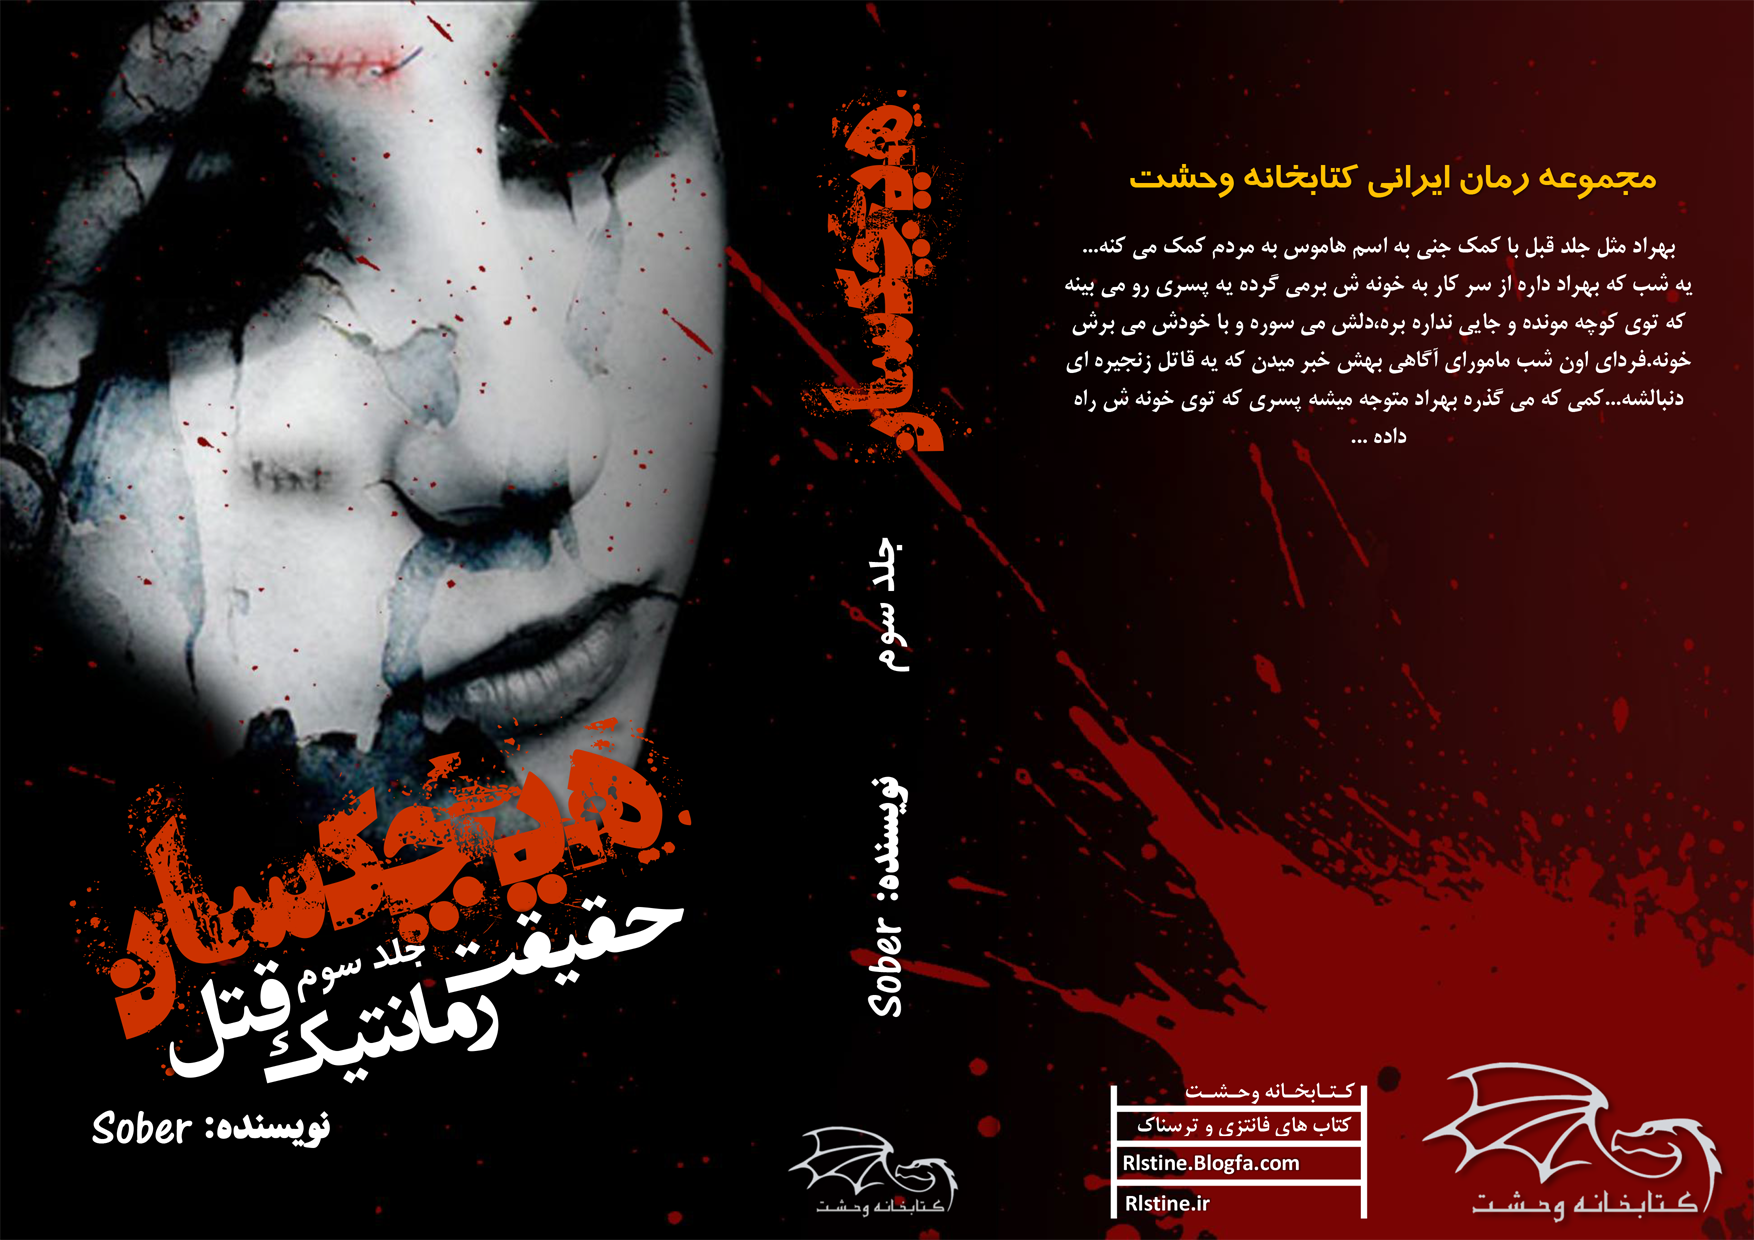 دانلود کتاب های ترسناک ایرانی
